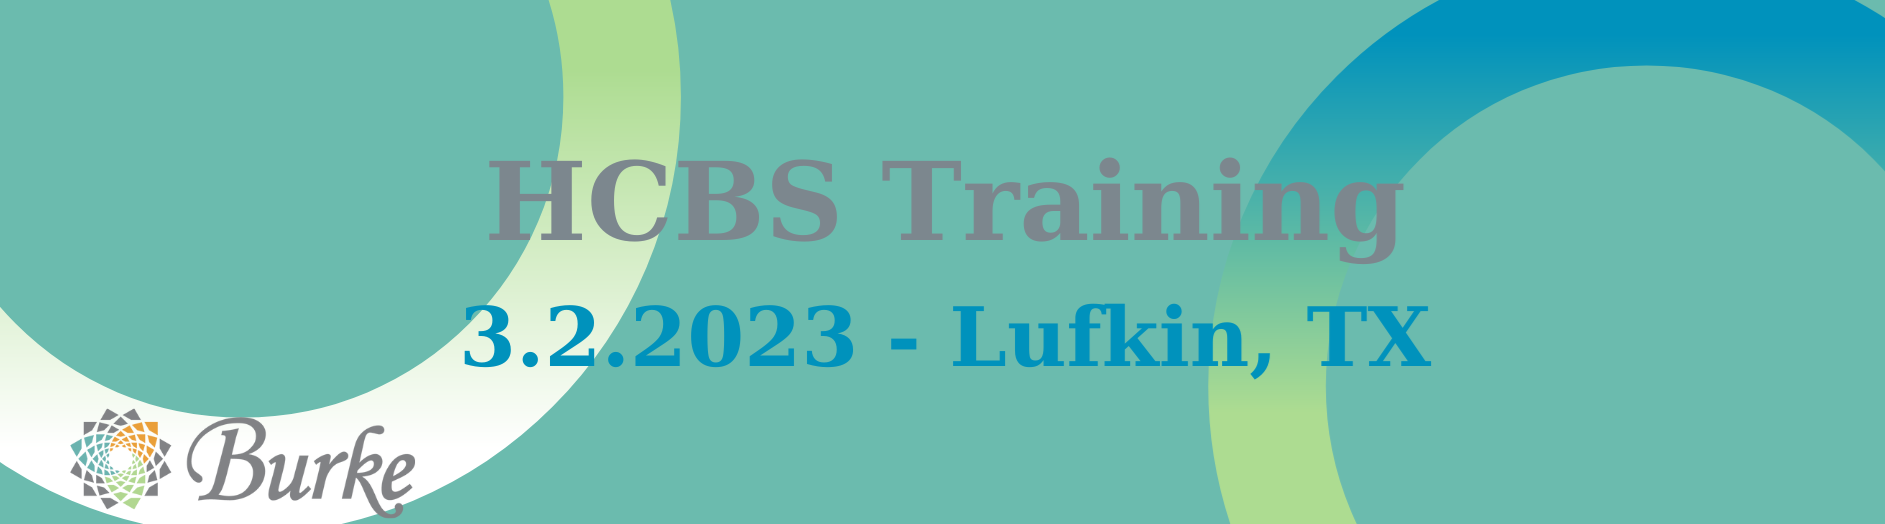 HCBS Training